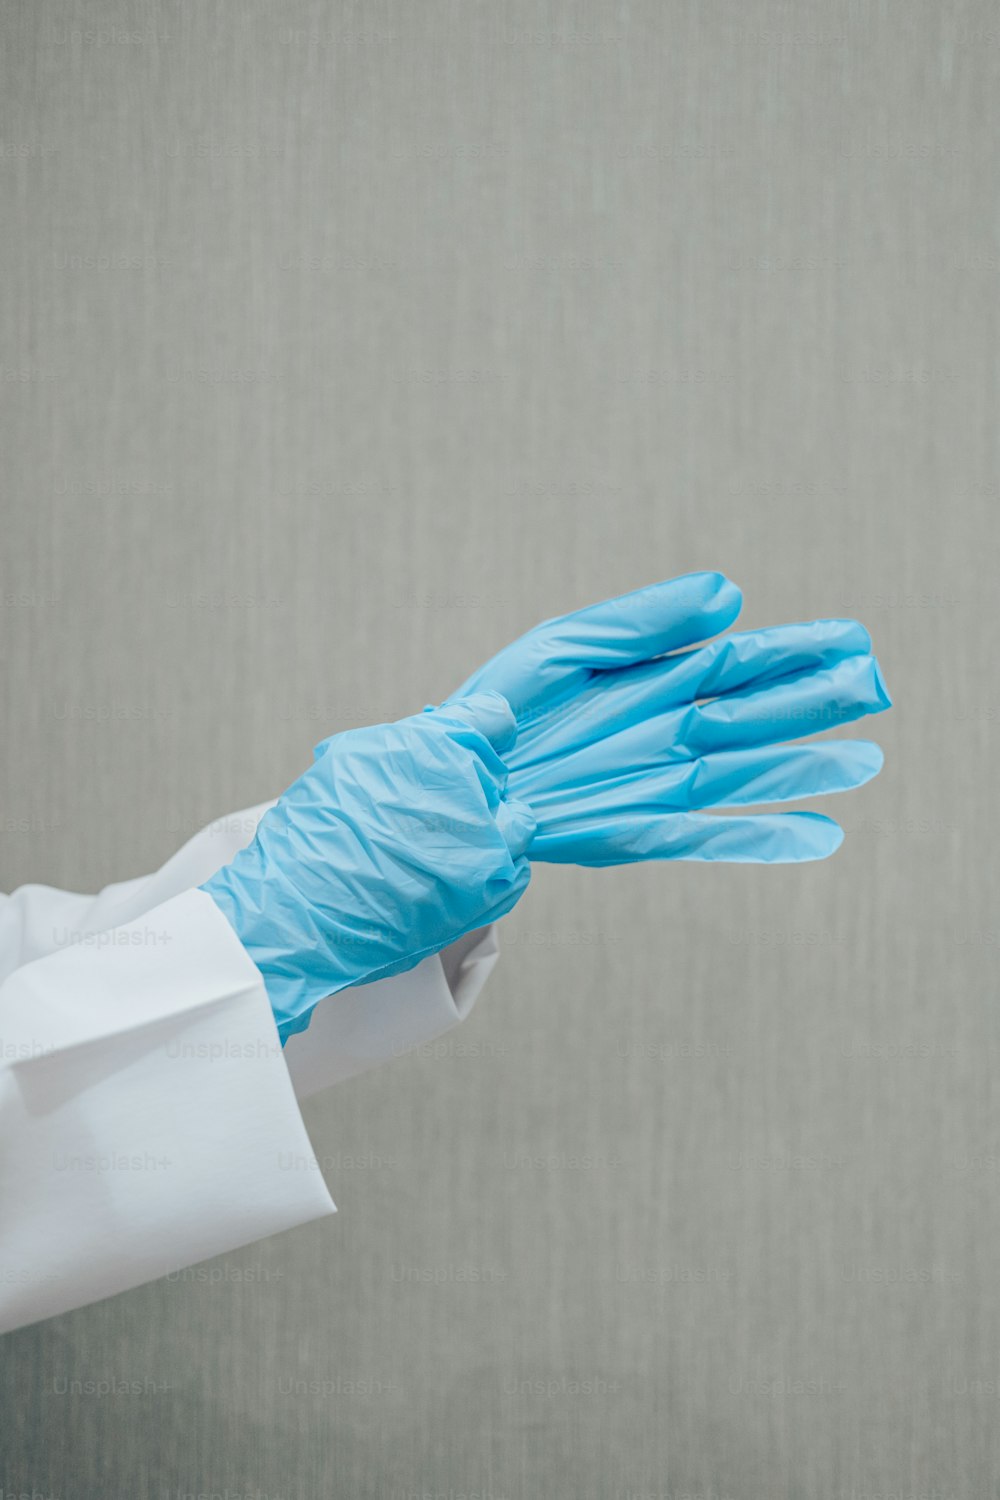 una persona con bata blanca y guantes azules